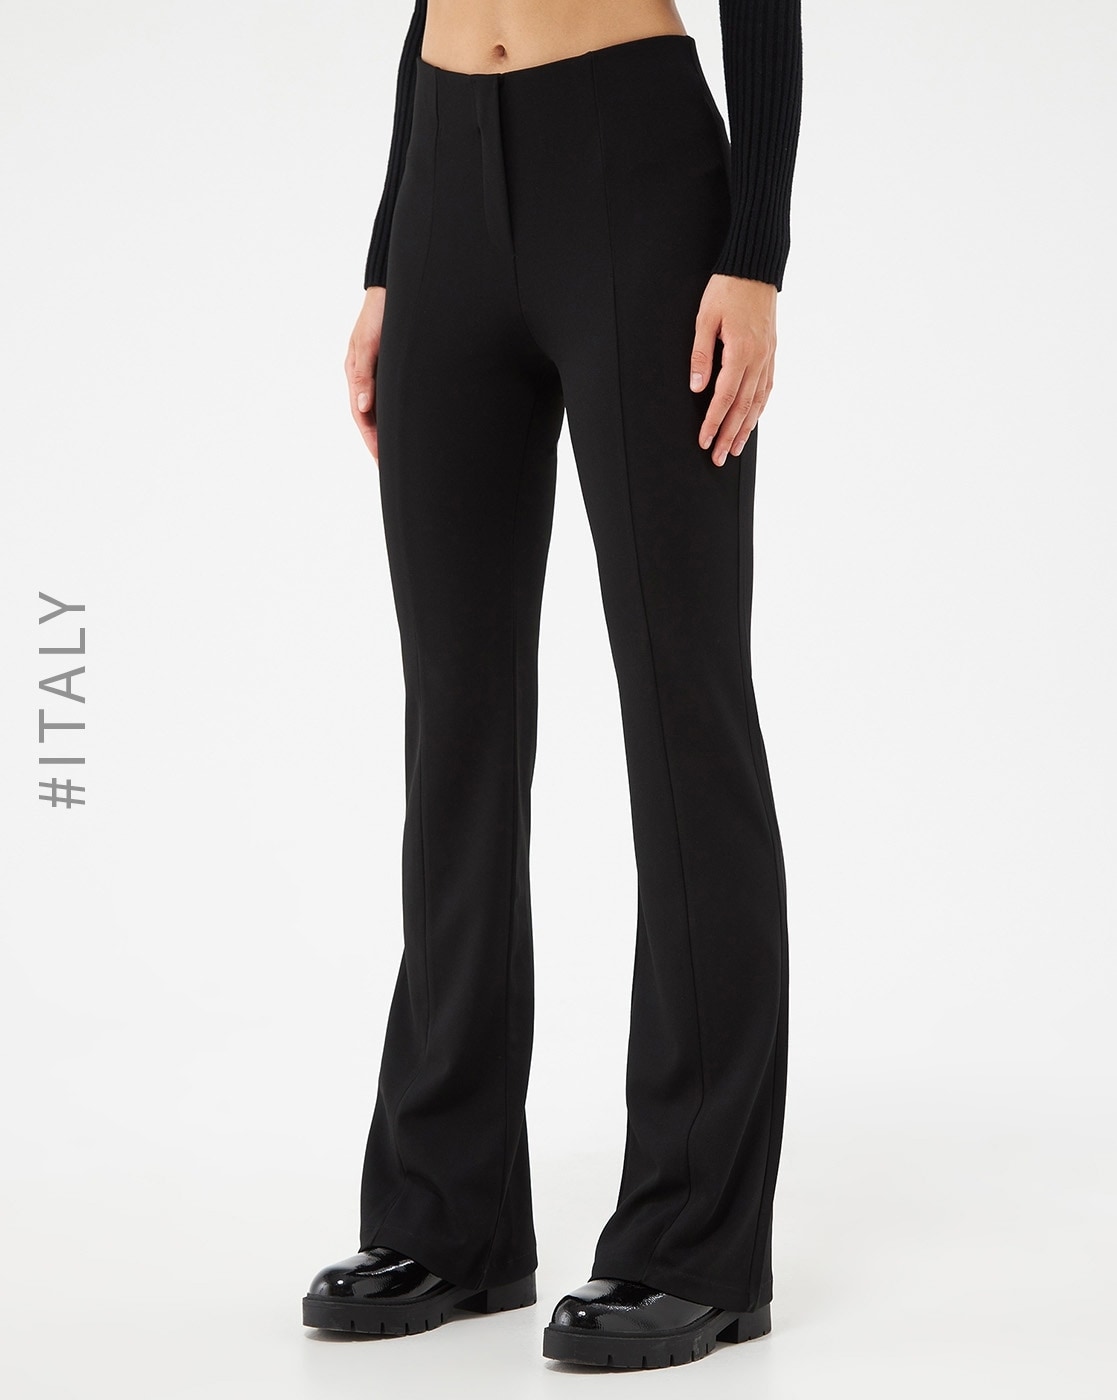 Buy Black Trousers  Pants for Women by BROADSTAR Online  Ajiocom